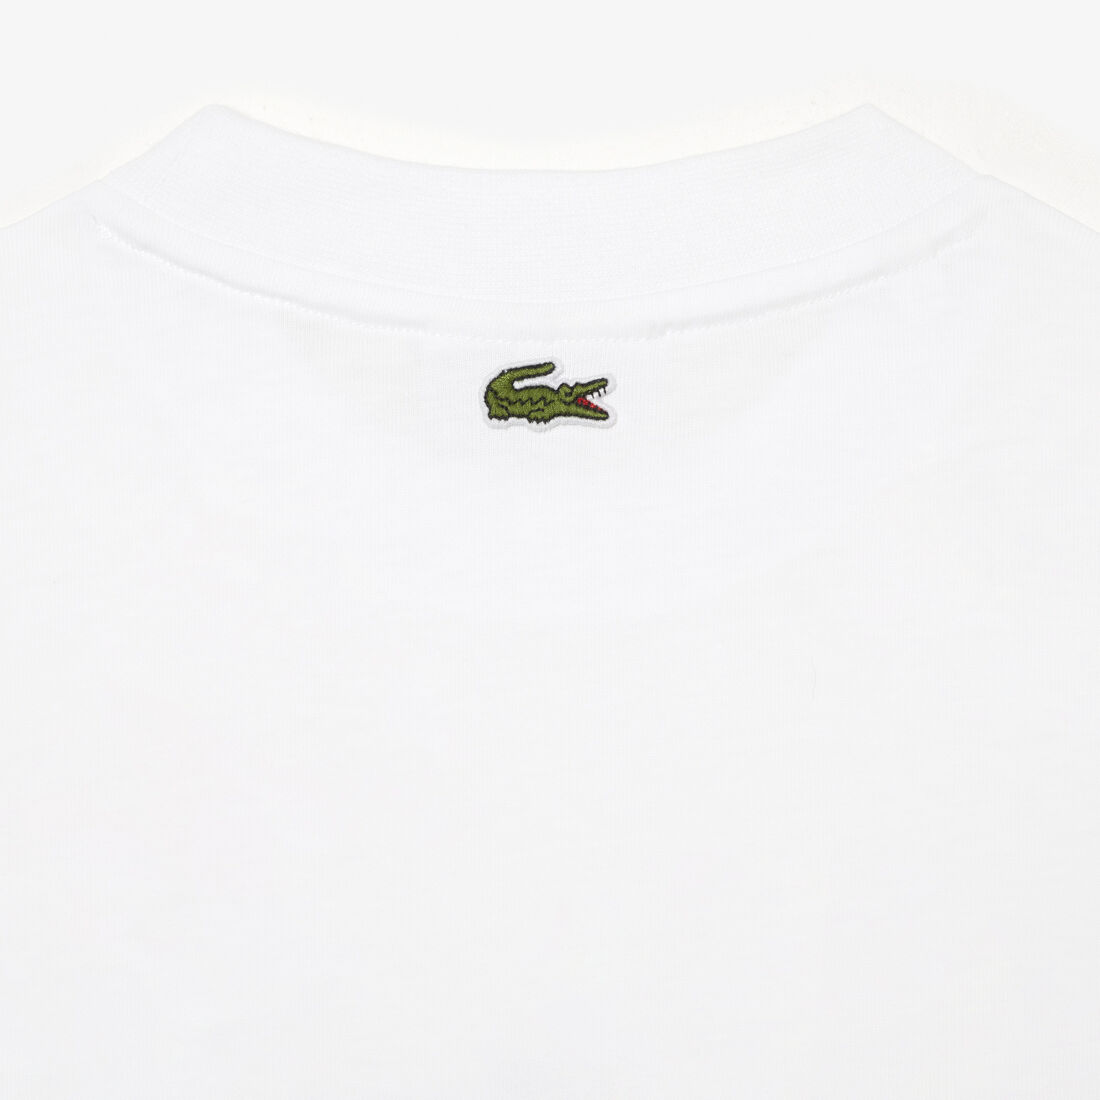 Lacoste Oversize Net Print Jersey T-shirts Damen Weiß | TCHV-35916